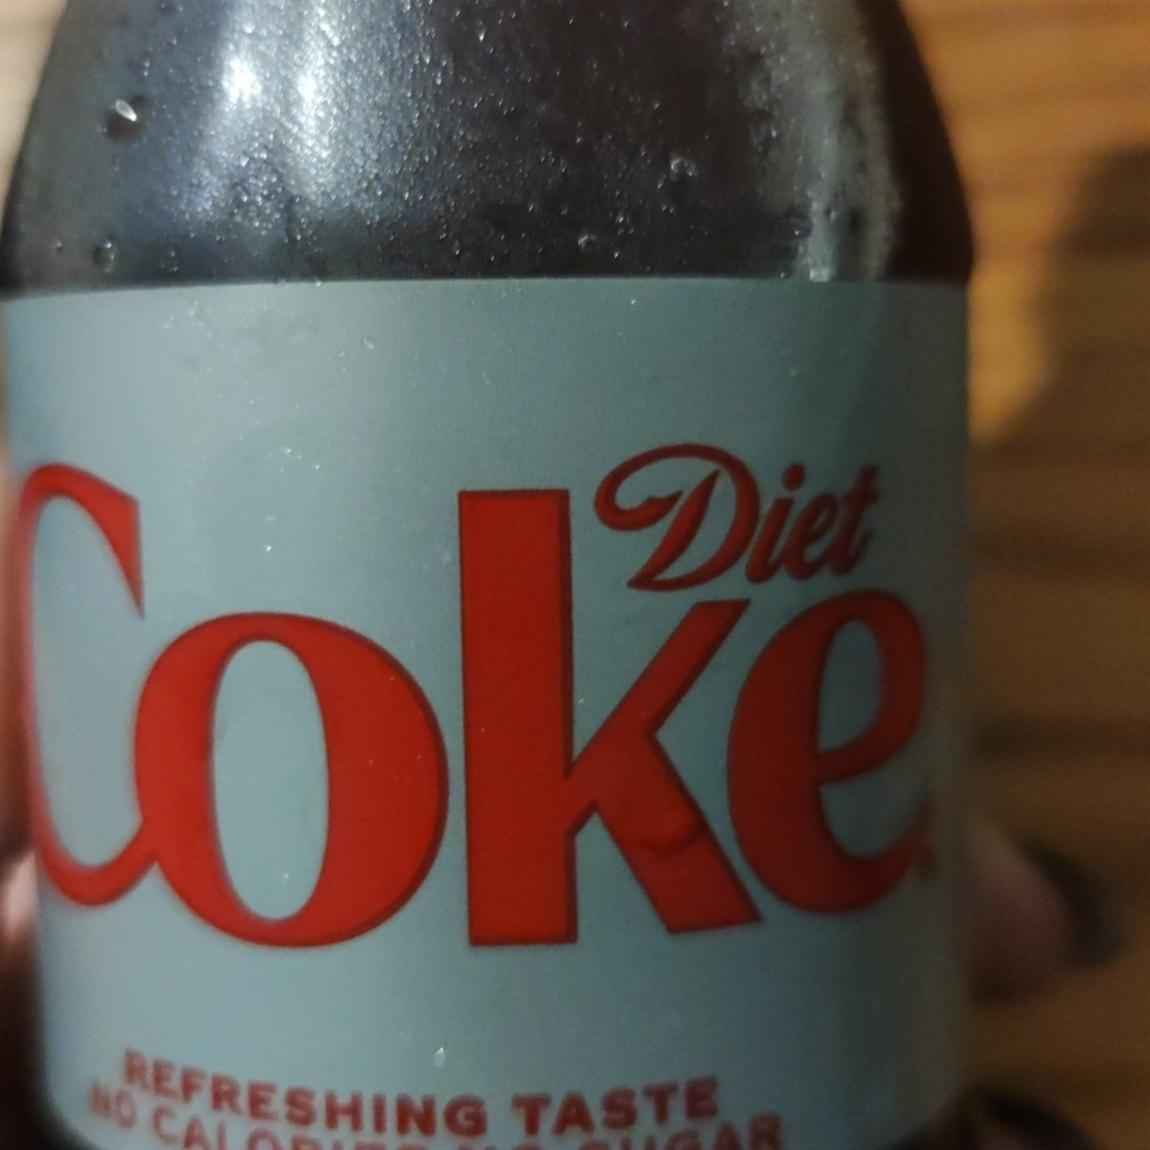 Zdjęcia - coke diet